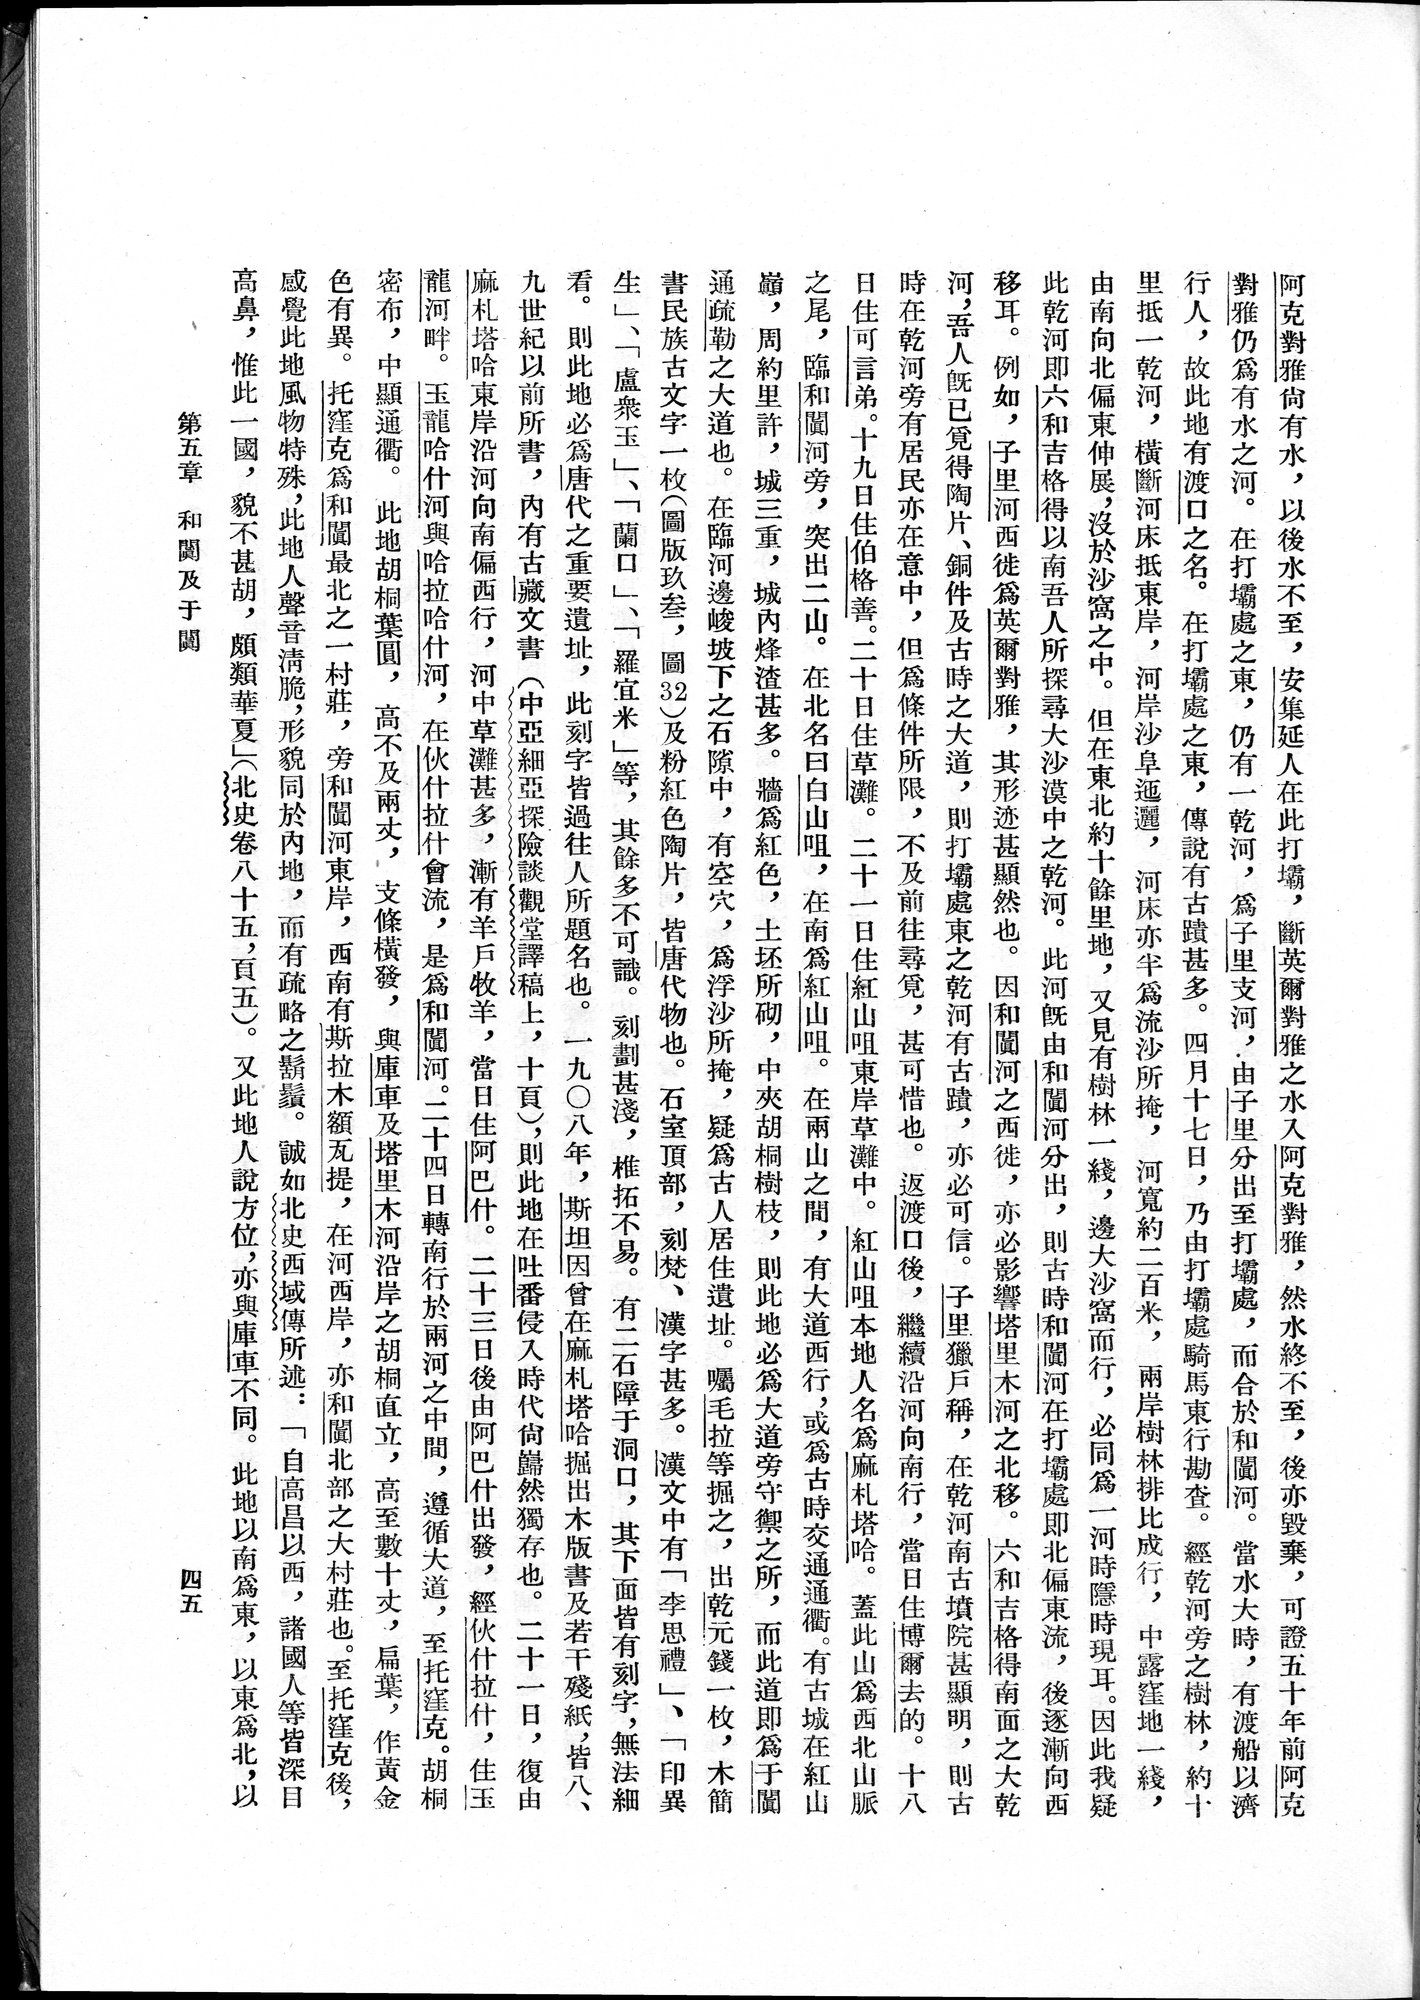 塔里木盆地考古記 : vol.1 / Page 69 (Grayscale High Resolution Image)